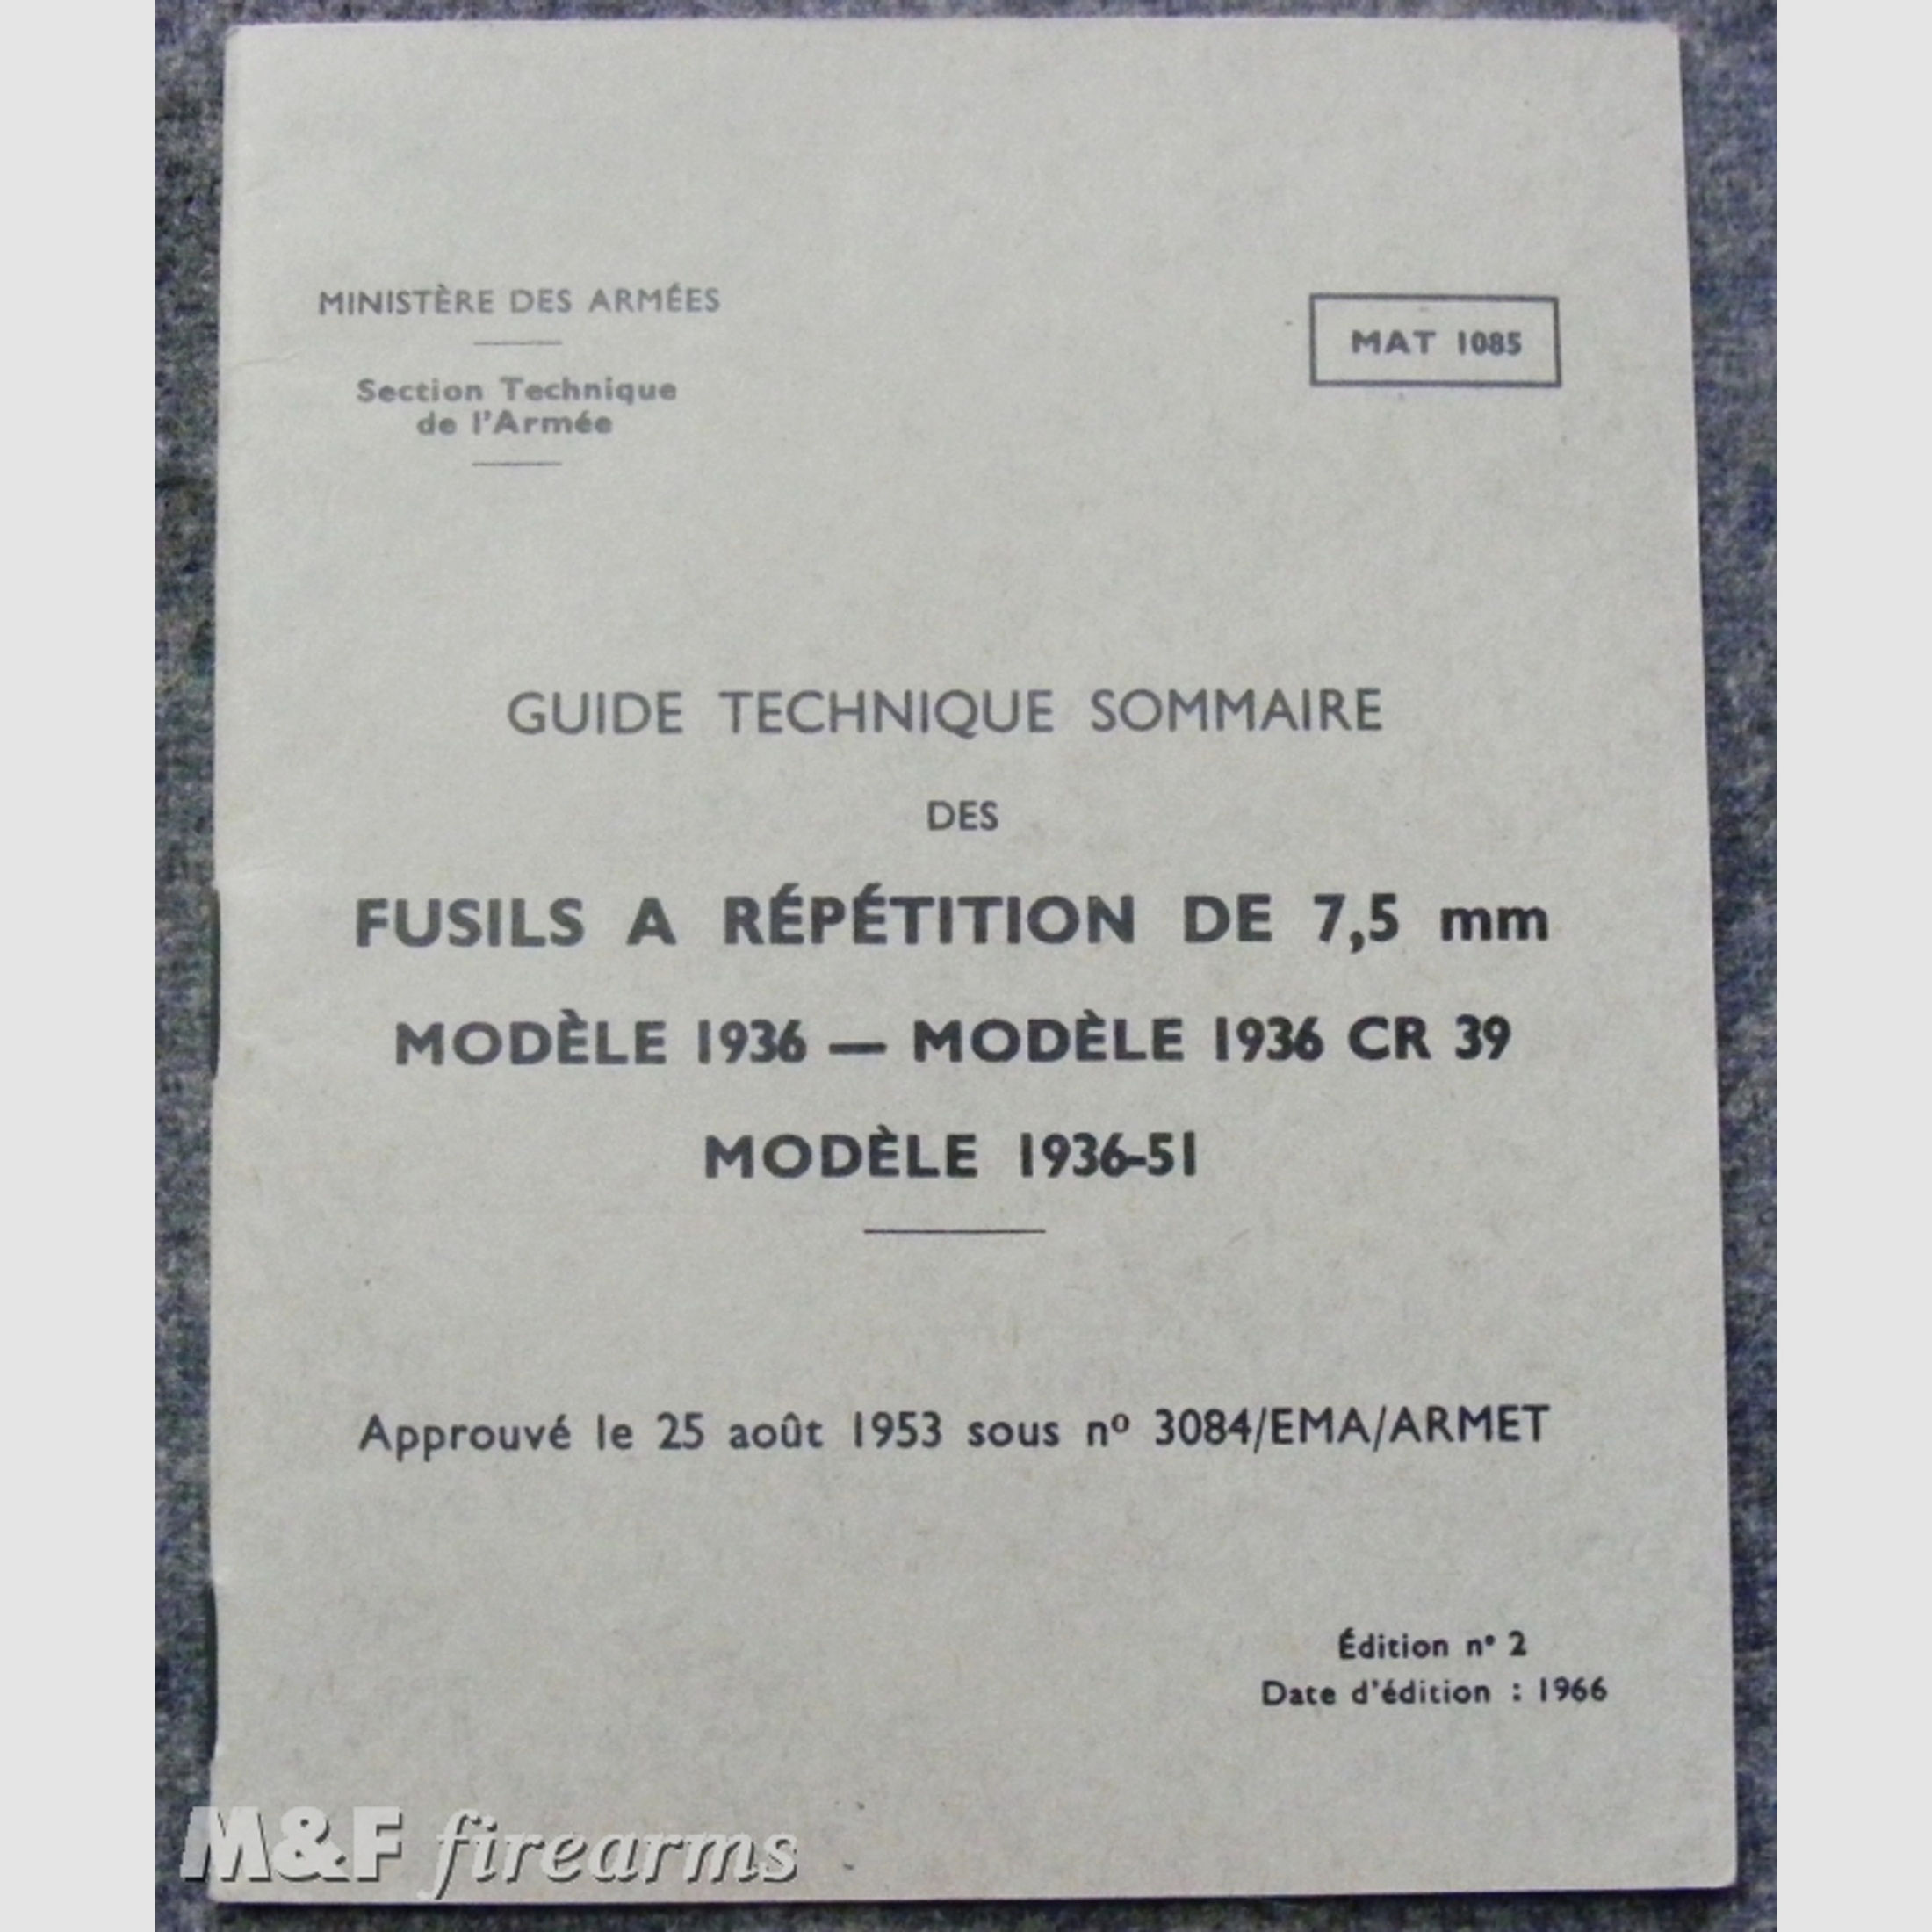 Guide Technique Sommaire des Fusils a Répétiton de 7,5 mm